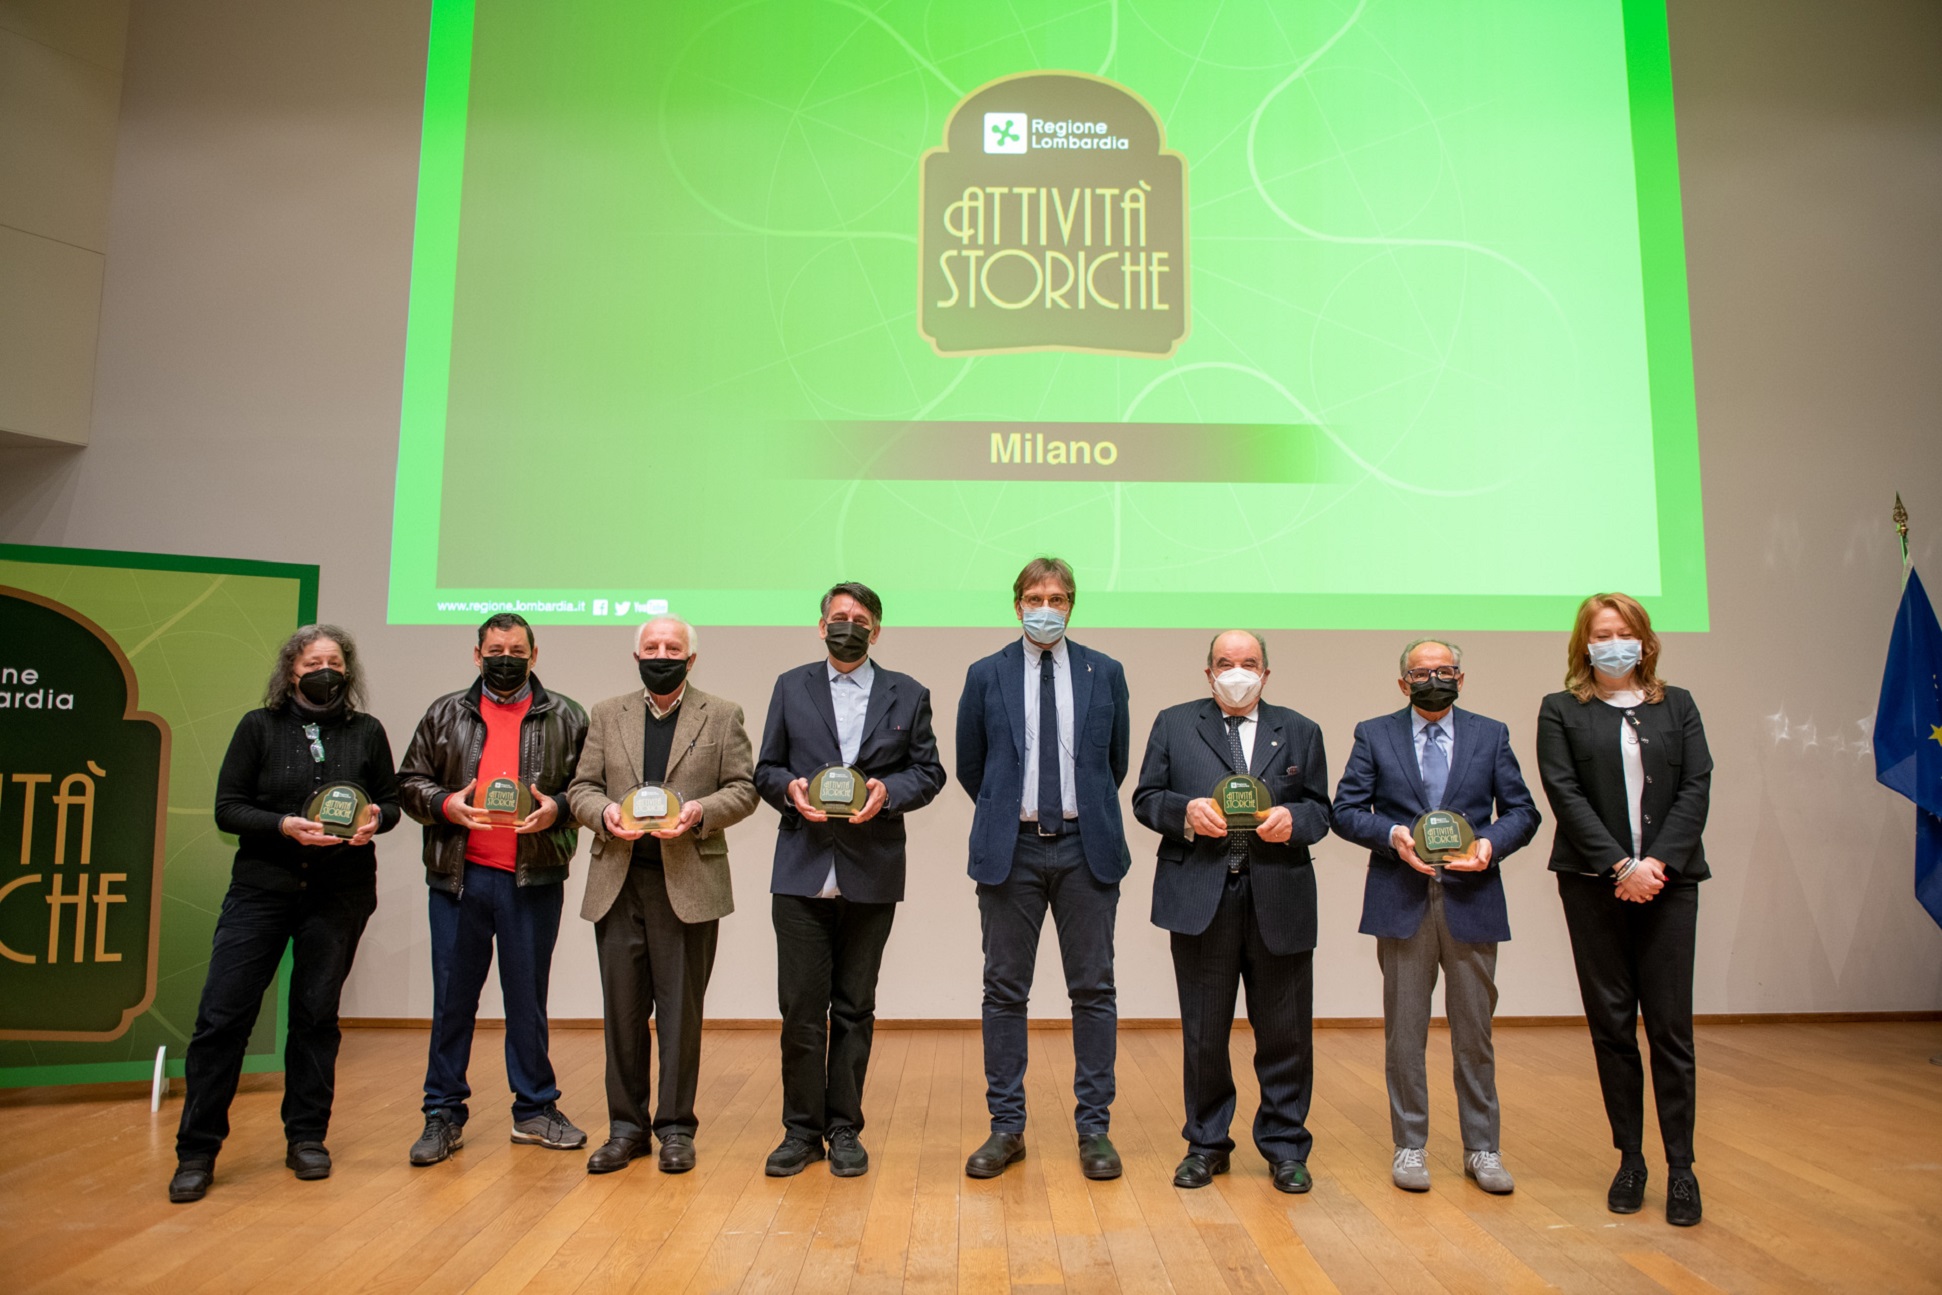 Premiazione attività storiche premiati Milano